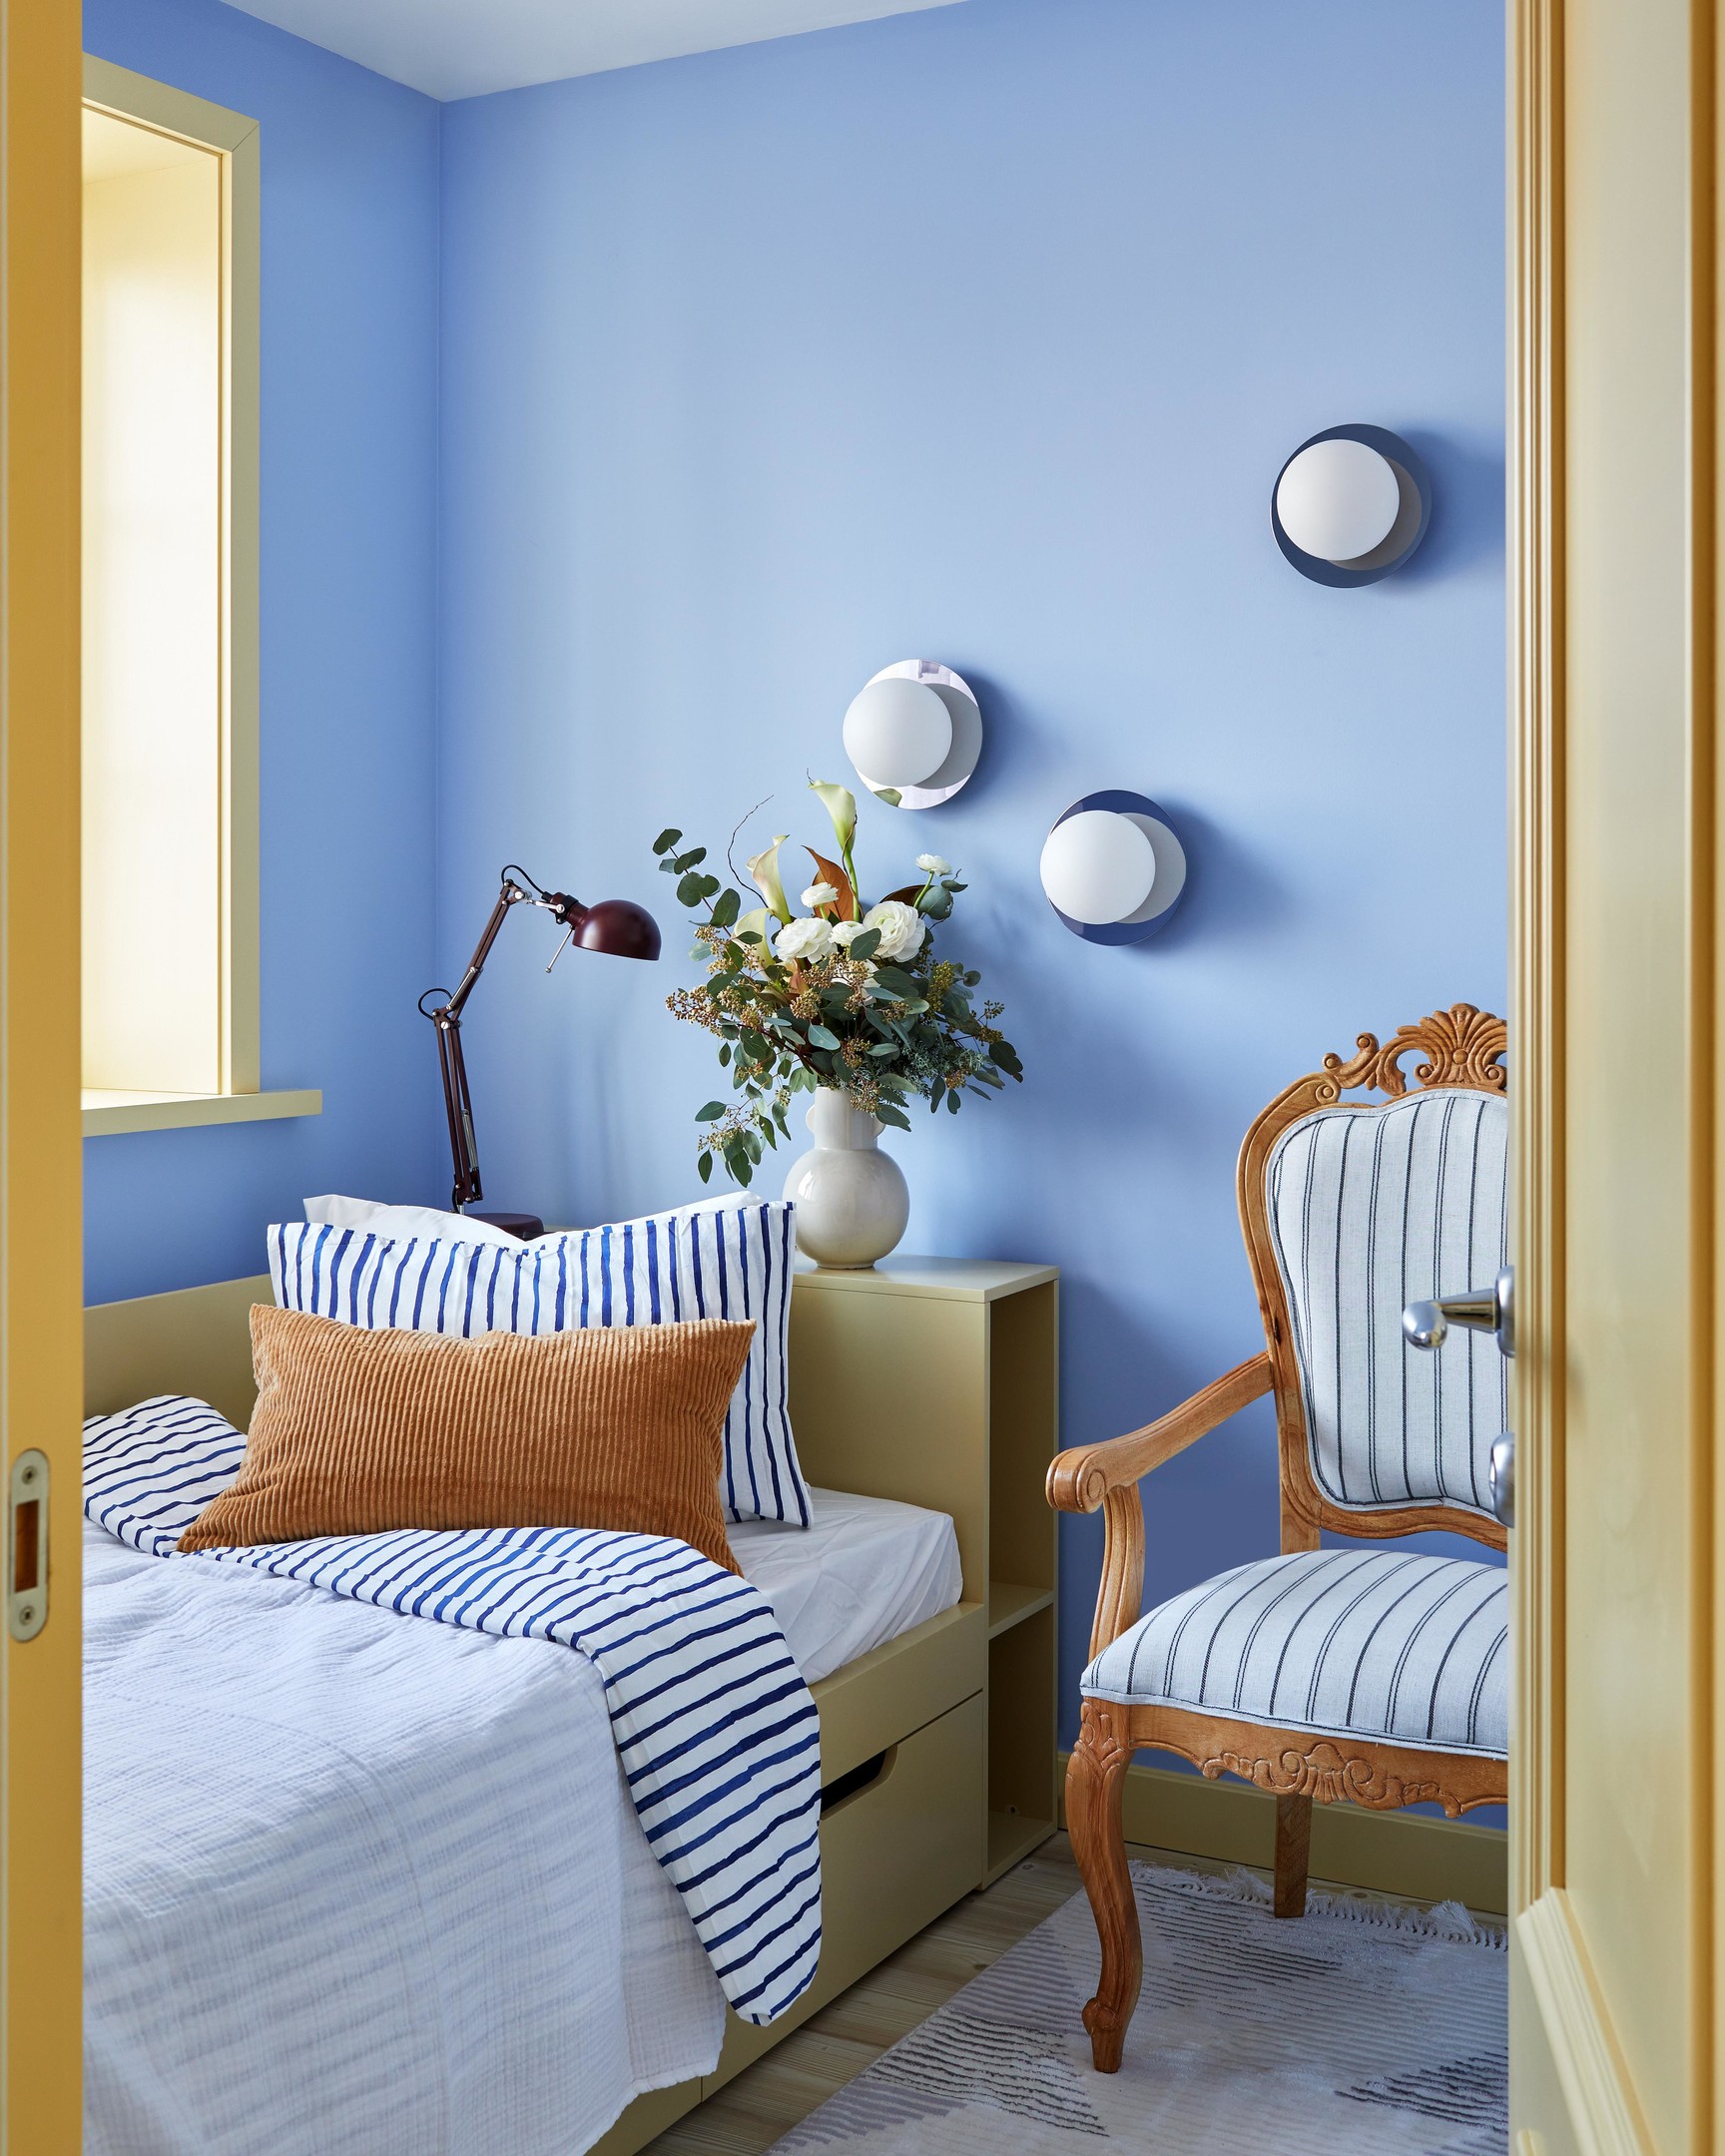 Phòng ngủ siêu nhỏ nhưng siêu xinh với sơn tường màu xanh lam dịu mát cùng họa tiết kẻ sọc phong cách Địa Trung Hải. Bên cạnh đèn bàn, bộ ba đèn gắn tường hình quả cầu vừa cung cấp ánh sáng vừa trang trí cho bức tường bắt mắt.